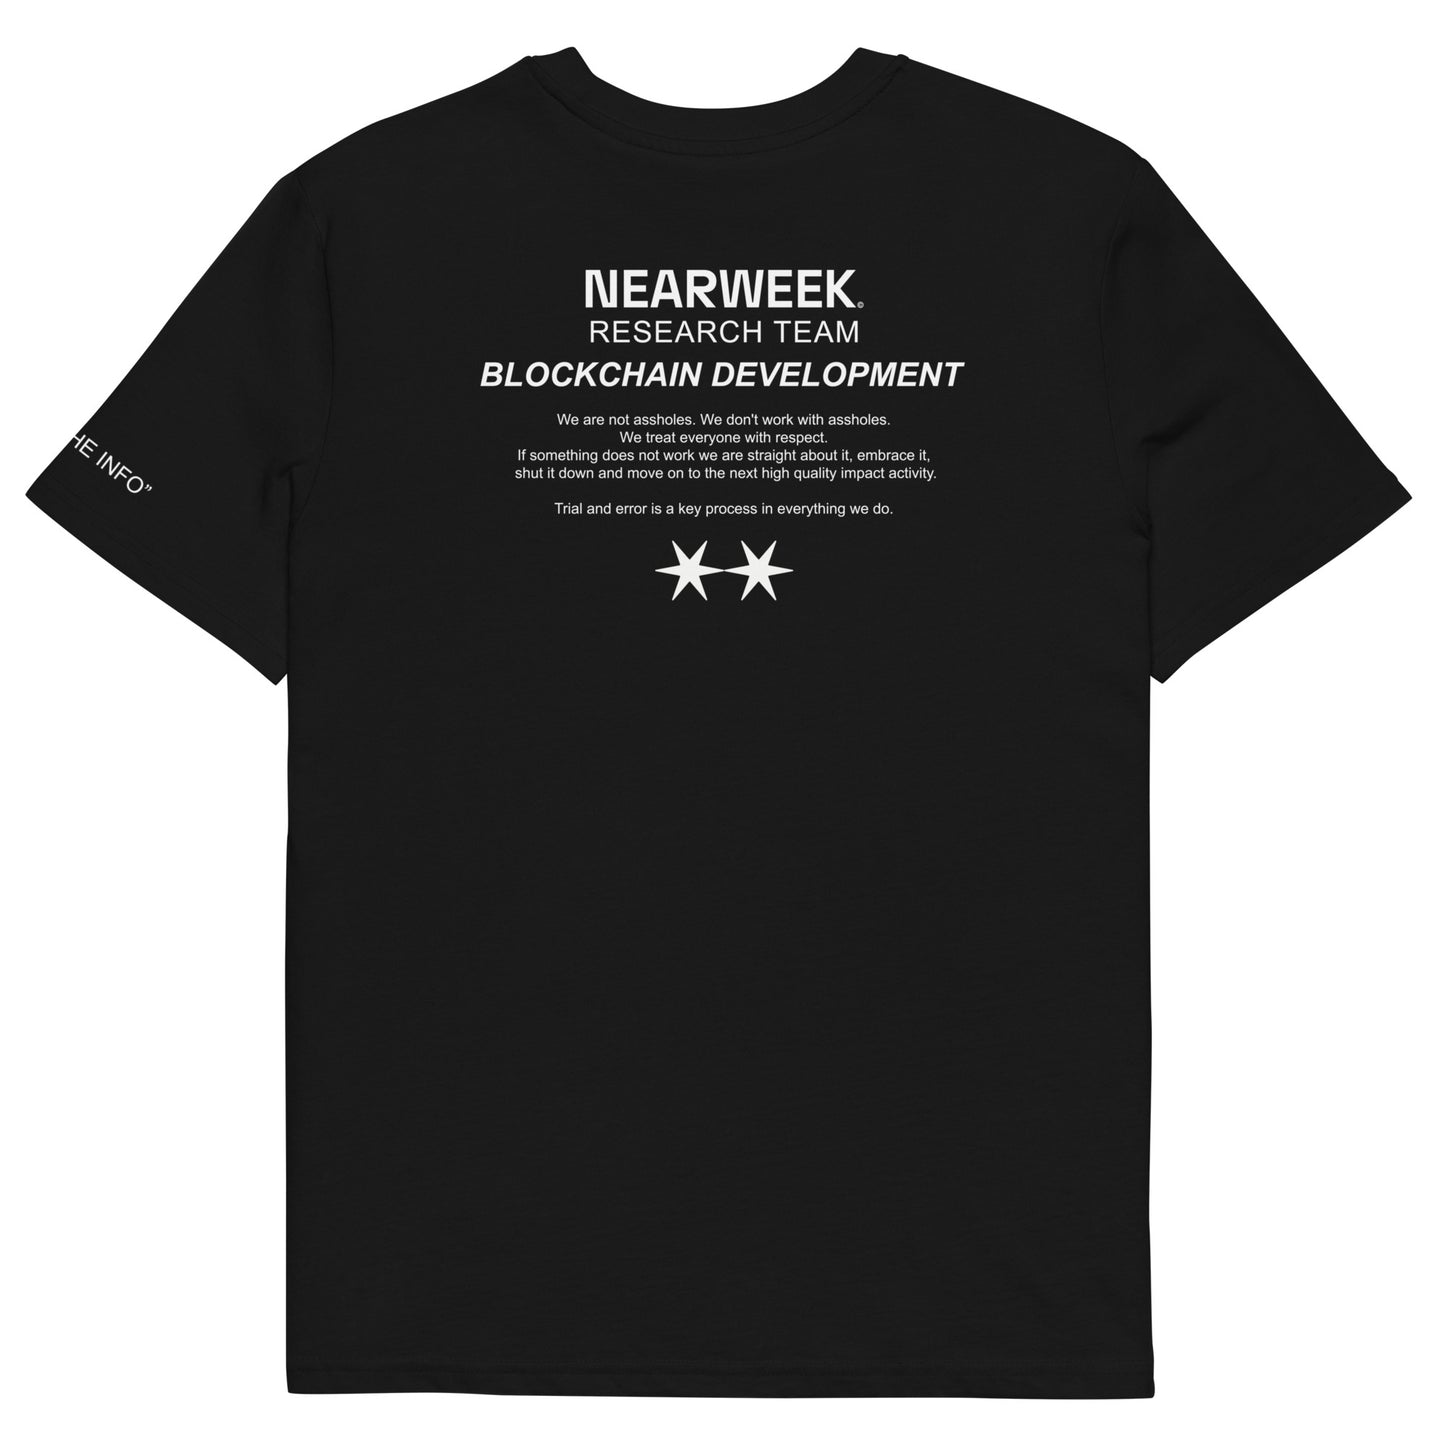 NEARWEEK 'Research Team' T-Shirt